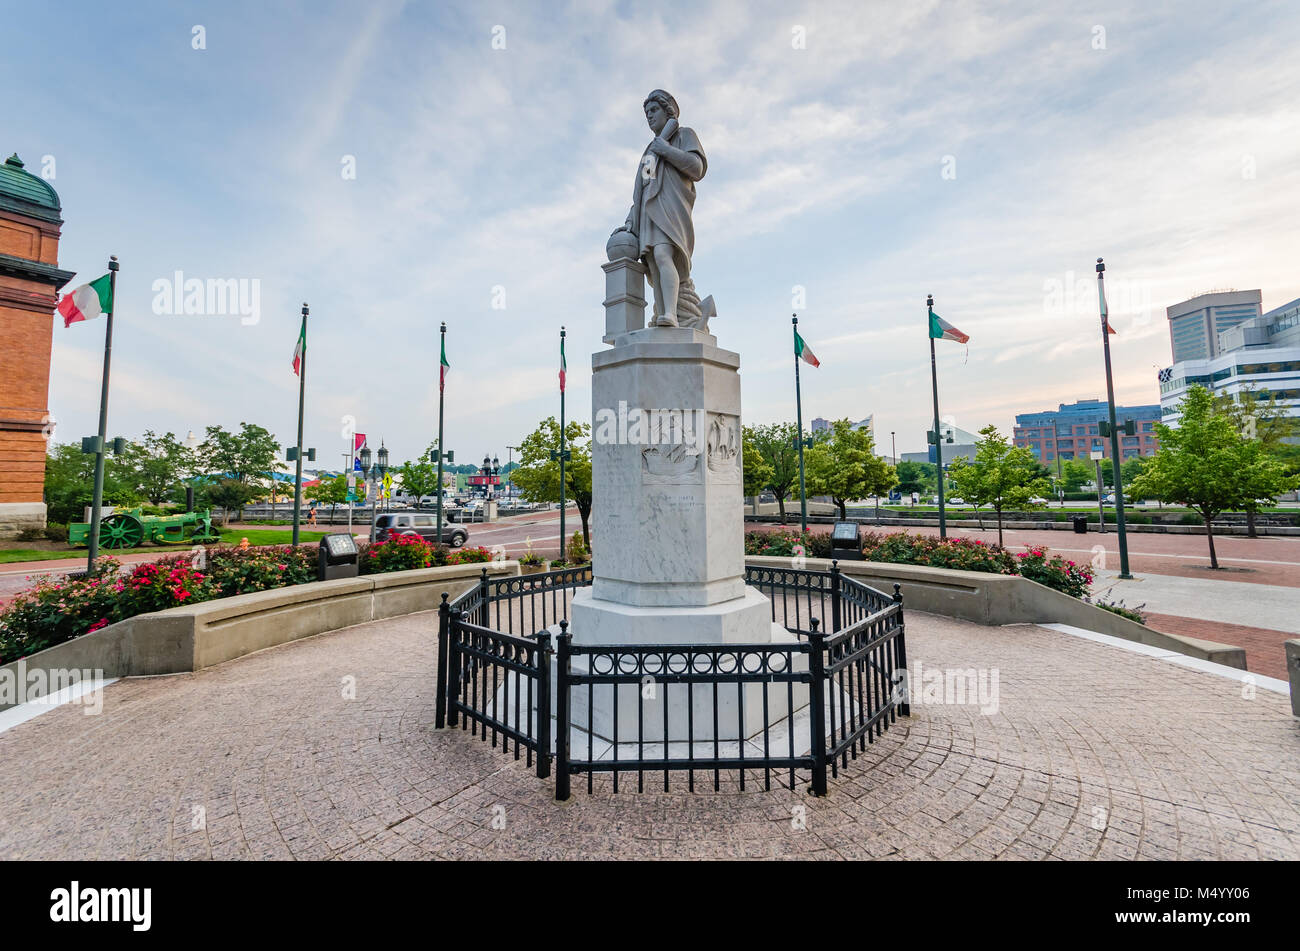 Consacrée en 1984 et situé près de la Petite Italie à Baltimore, Maryland, le marbre de Carrare italien monument commémore l'héritage italien de la ville. Banque D'Images